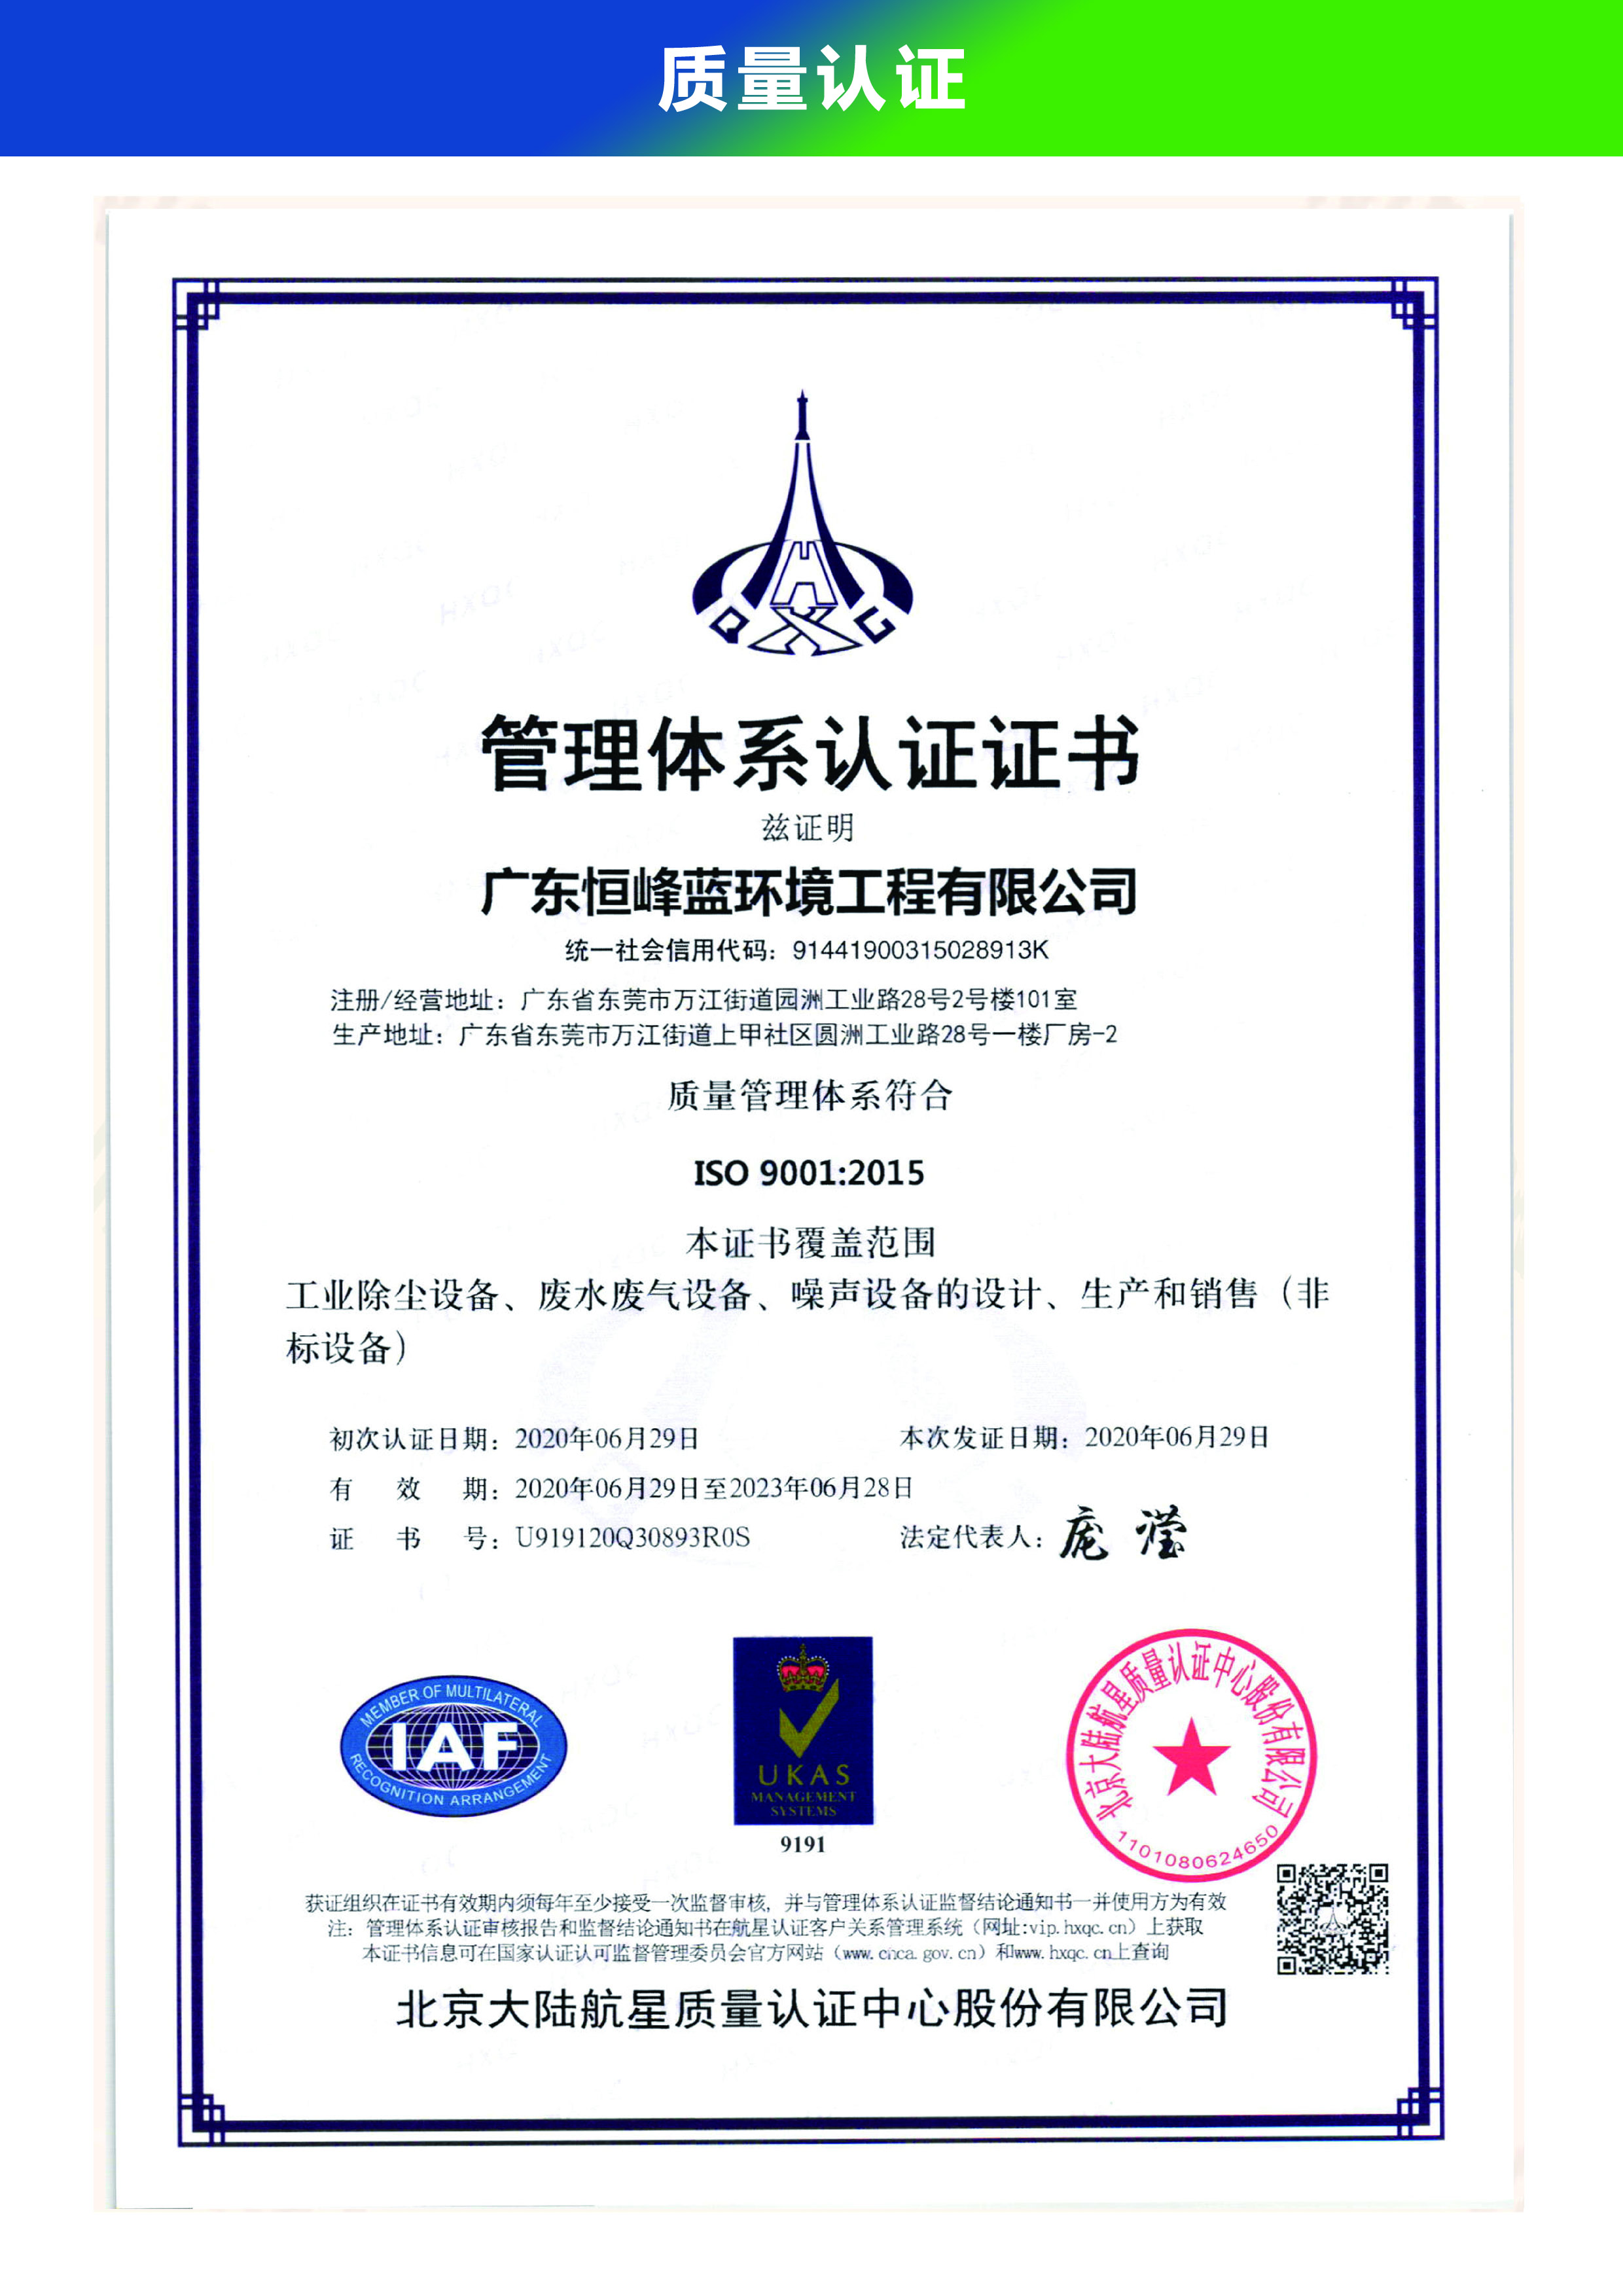  質量管理體系ISO9001認證